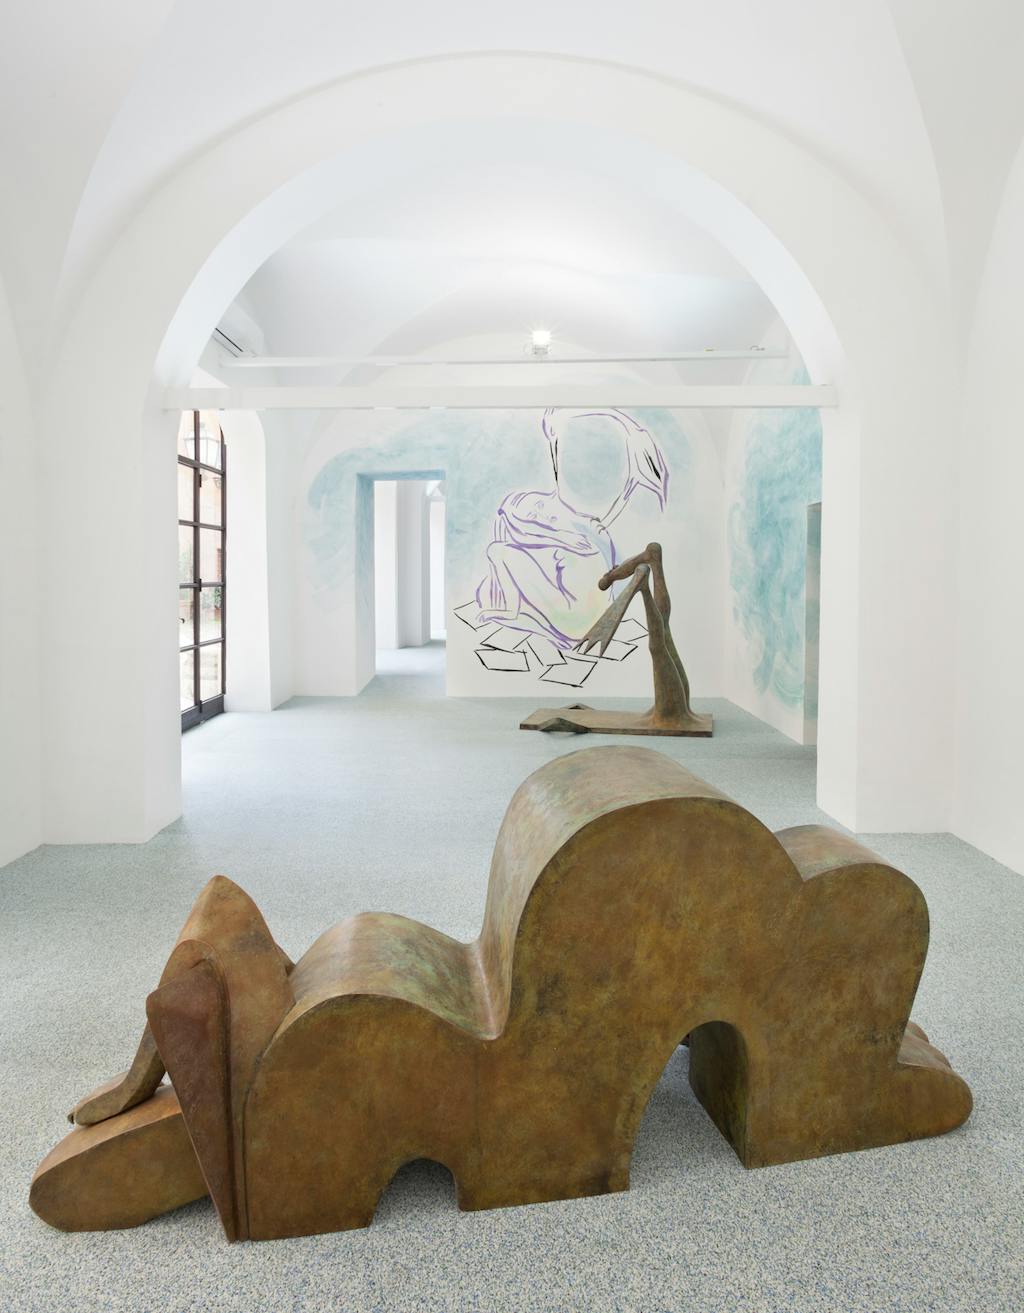 Exhibition view, Fondazione Memmo, Rome - © Mennour